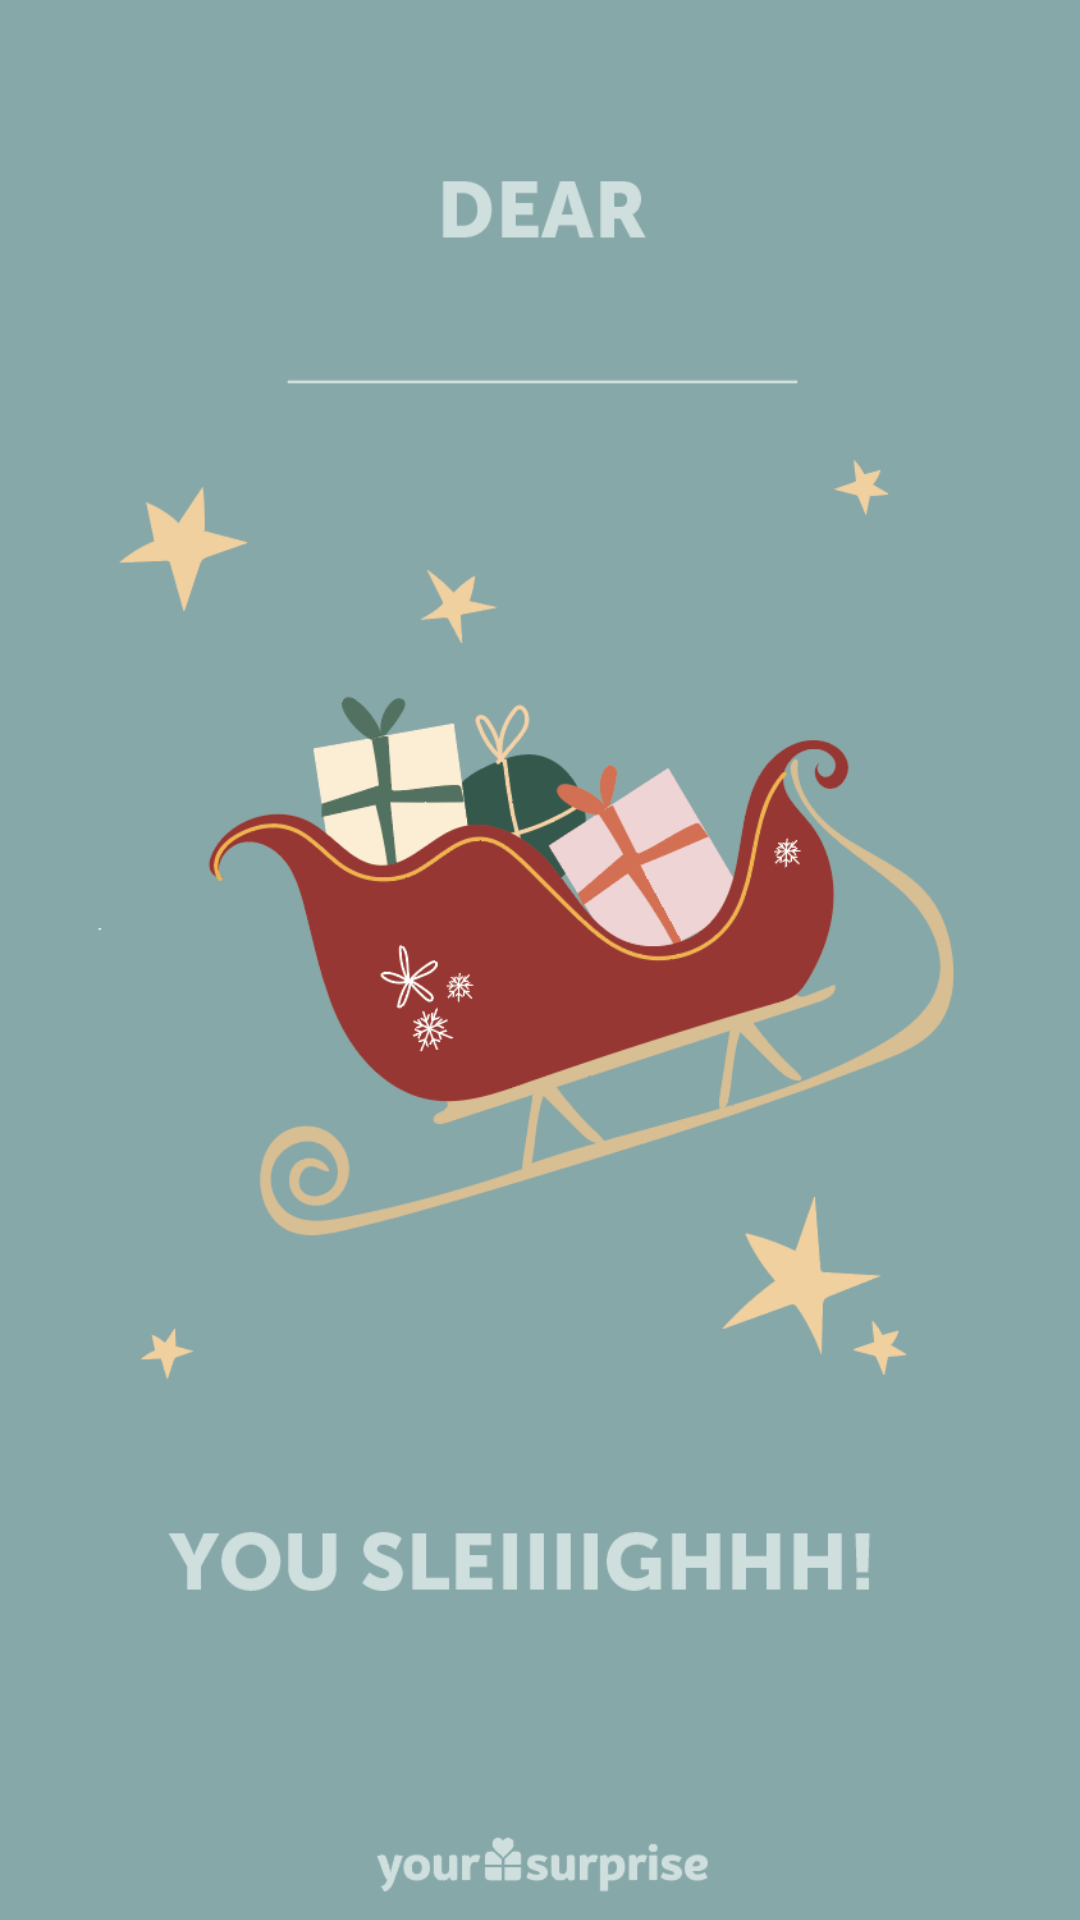 Ingyenes letöltés: Szórakoztató digitális karácsonyi képeslapok